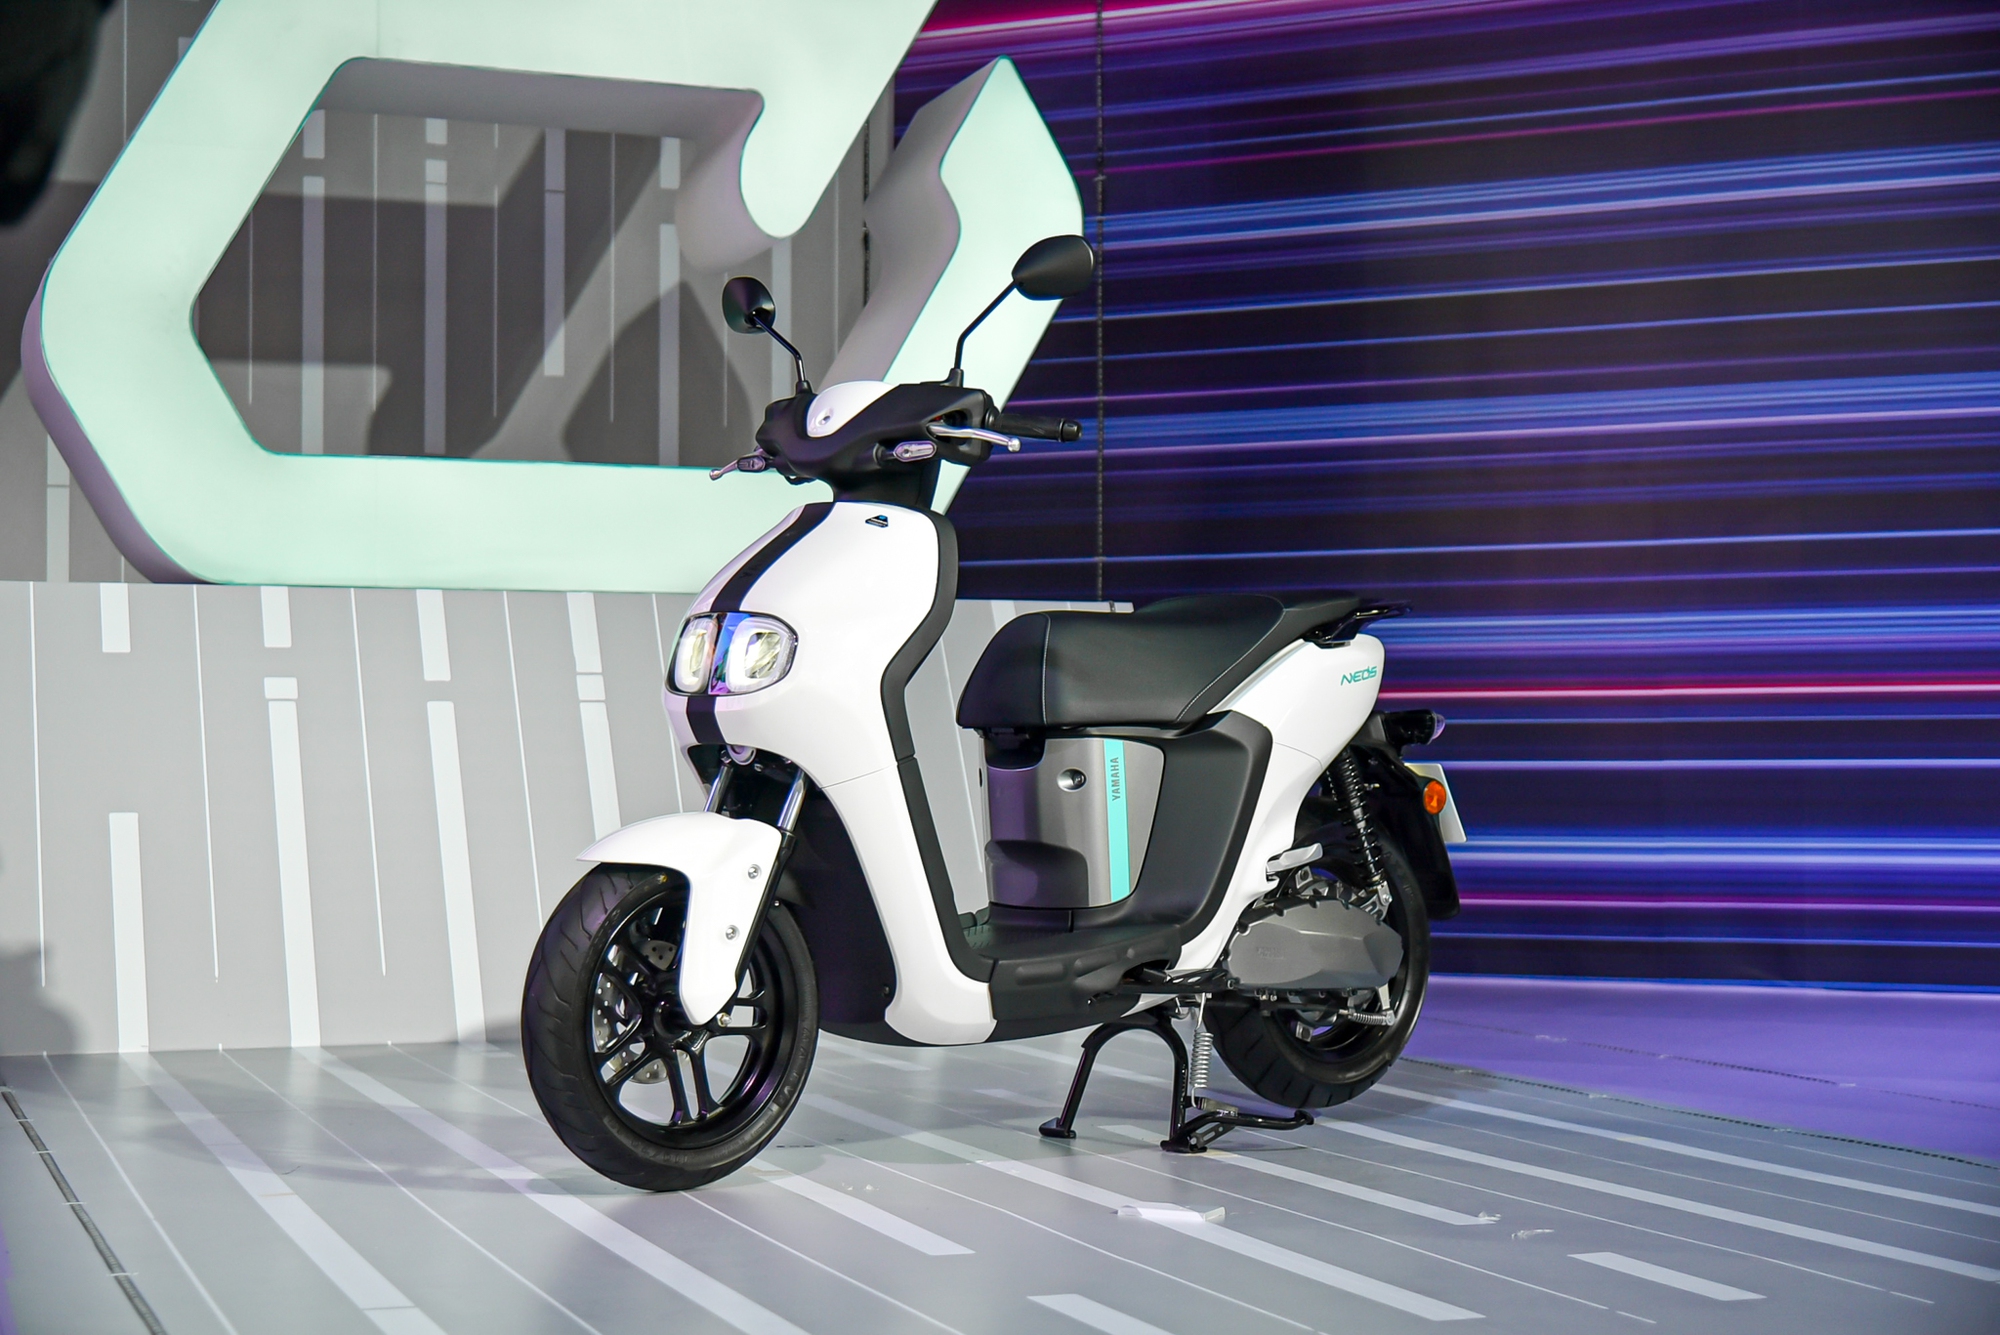 Yamaha Neos ra mắt Việt Nam: Giá 50 triệu đồng, có thể đi tối đa 144 km, cạnh tranh VinFast Vento S - Ảnh 1.